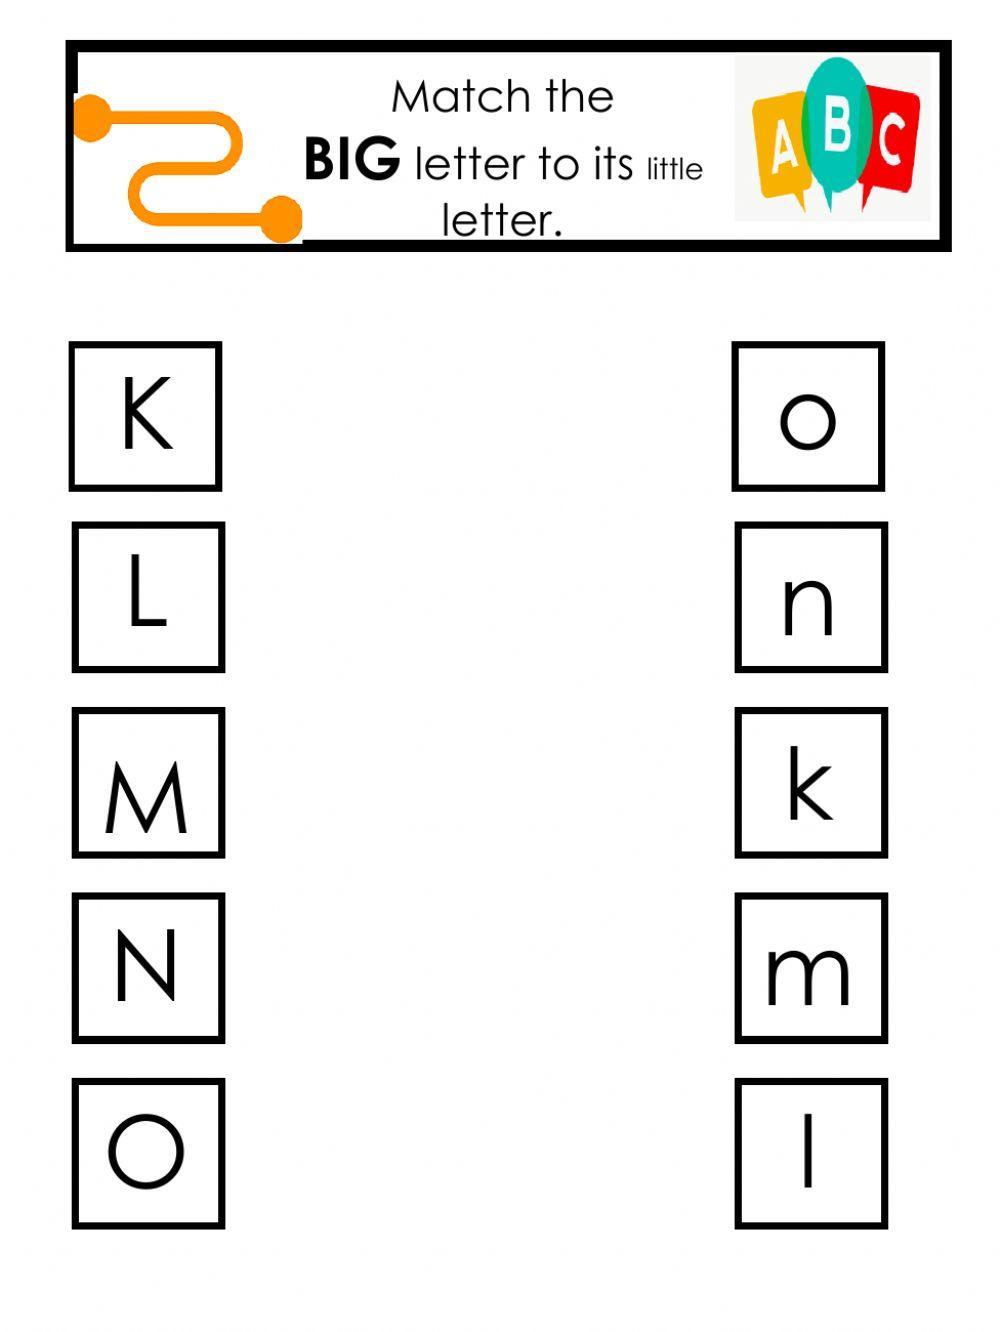 Big and little alphabet match